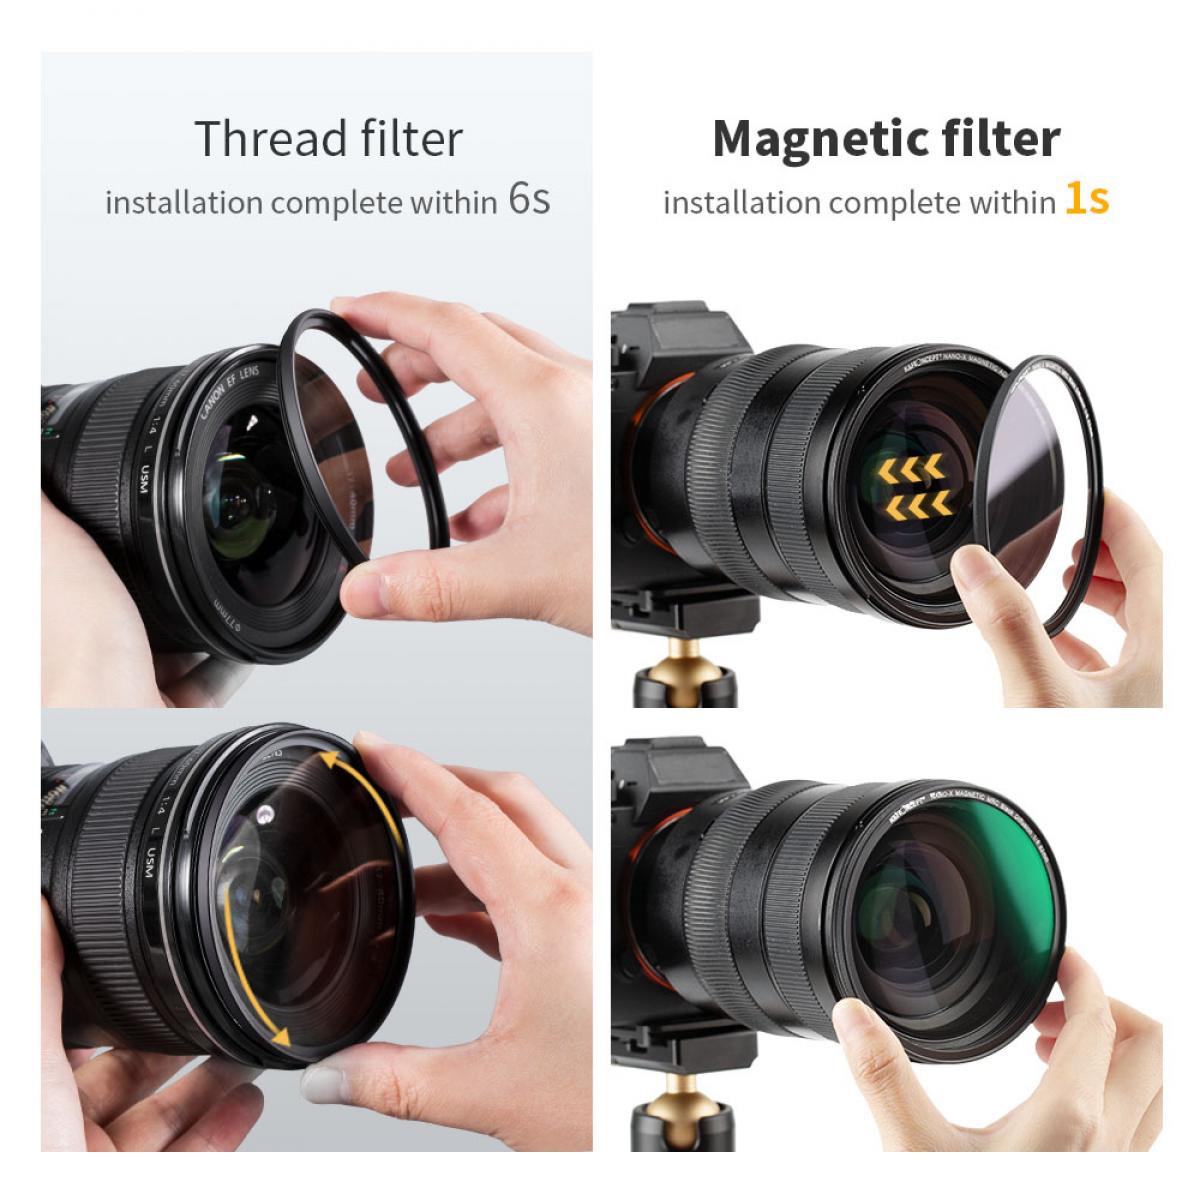 K&F Concept NANO-X Black Diffusion 1/8 Filter 55mm 